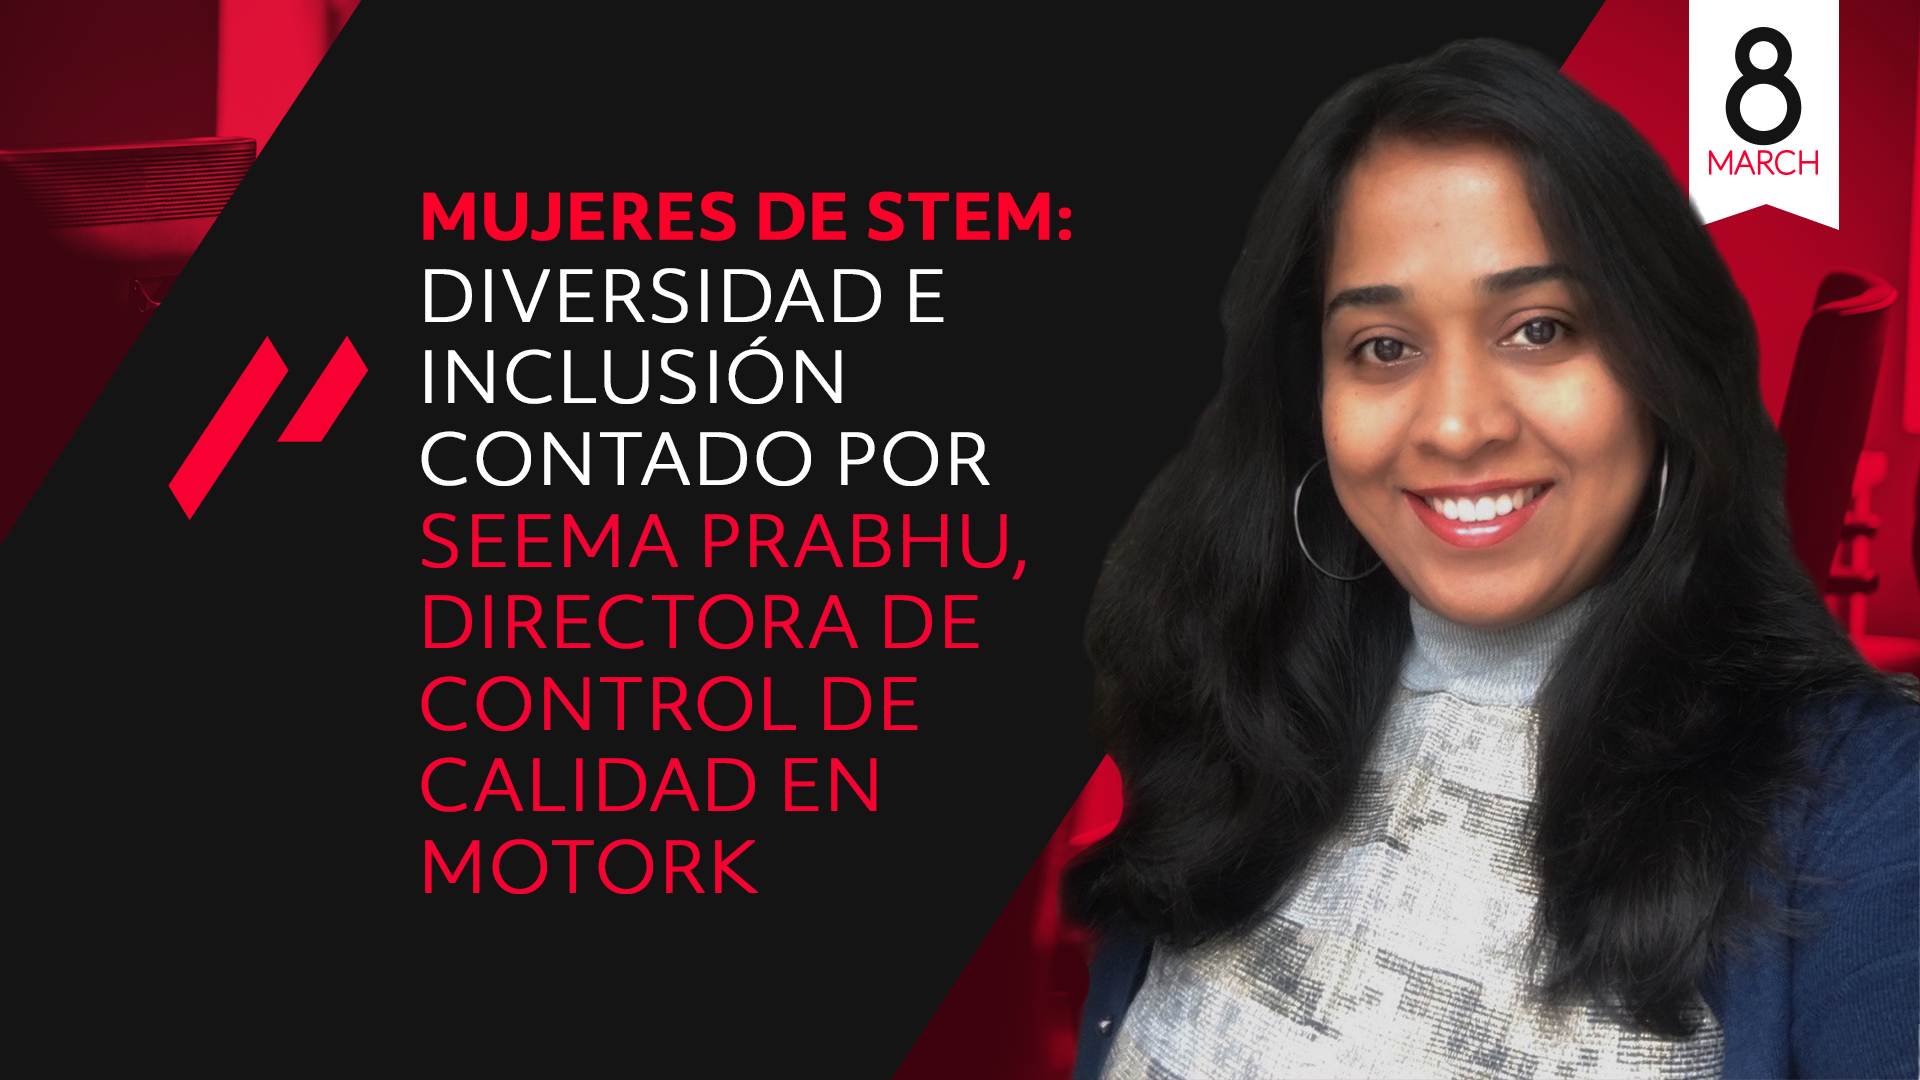 Mujeres de STEM: diversidad & inclusion